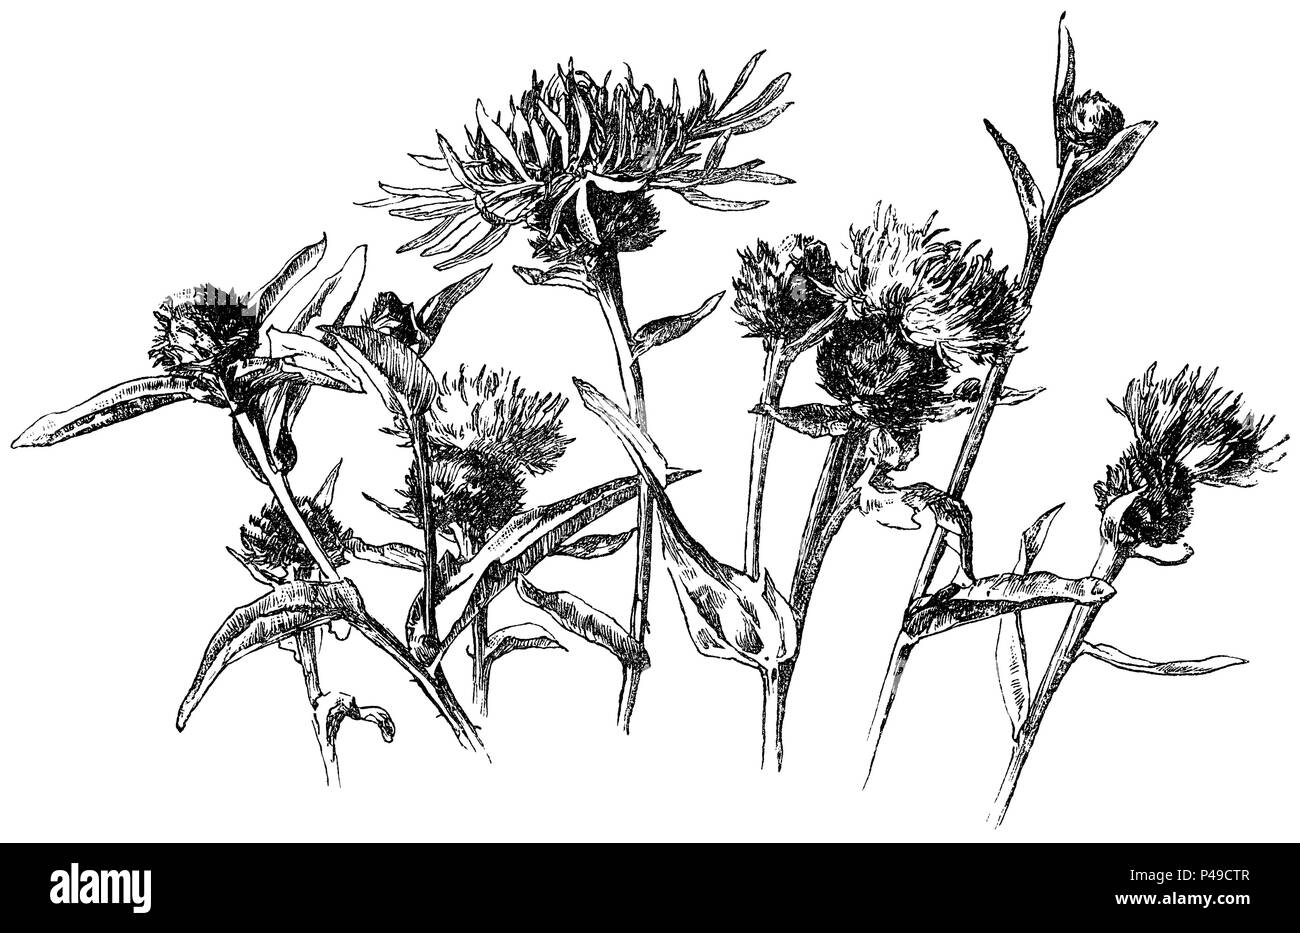 1883 incisione di centaurea nigra, noto come il fiordaliso minore, fiordaliso comune, fiordaliso nero o hardhead. Da una illustrazione di Alfred Parsons. Foto Stock